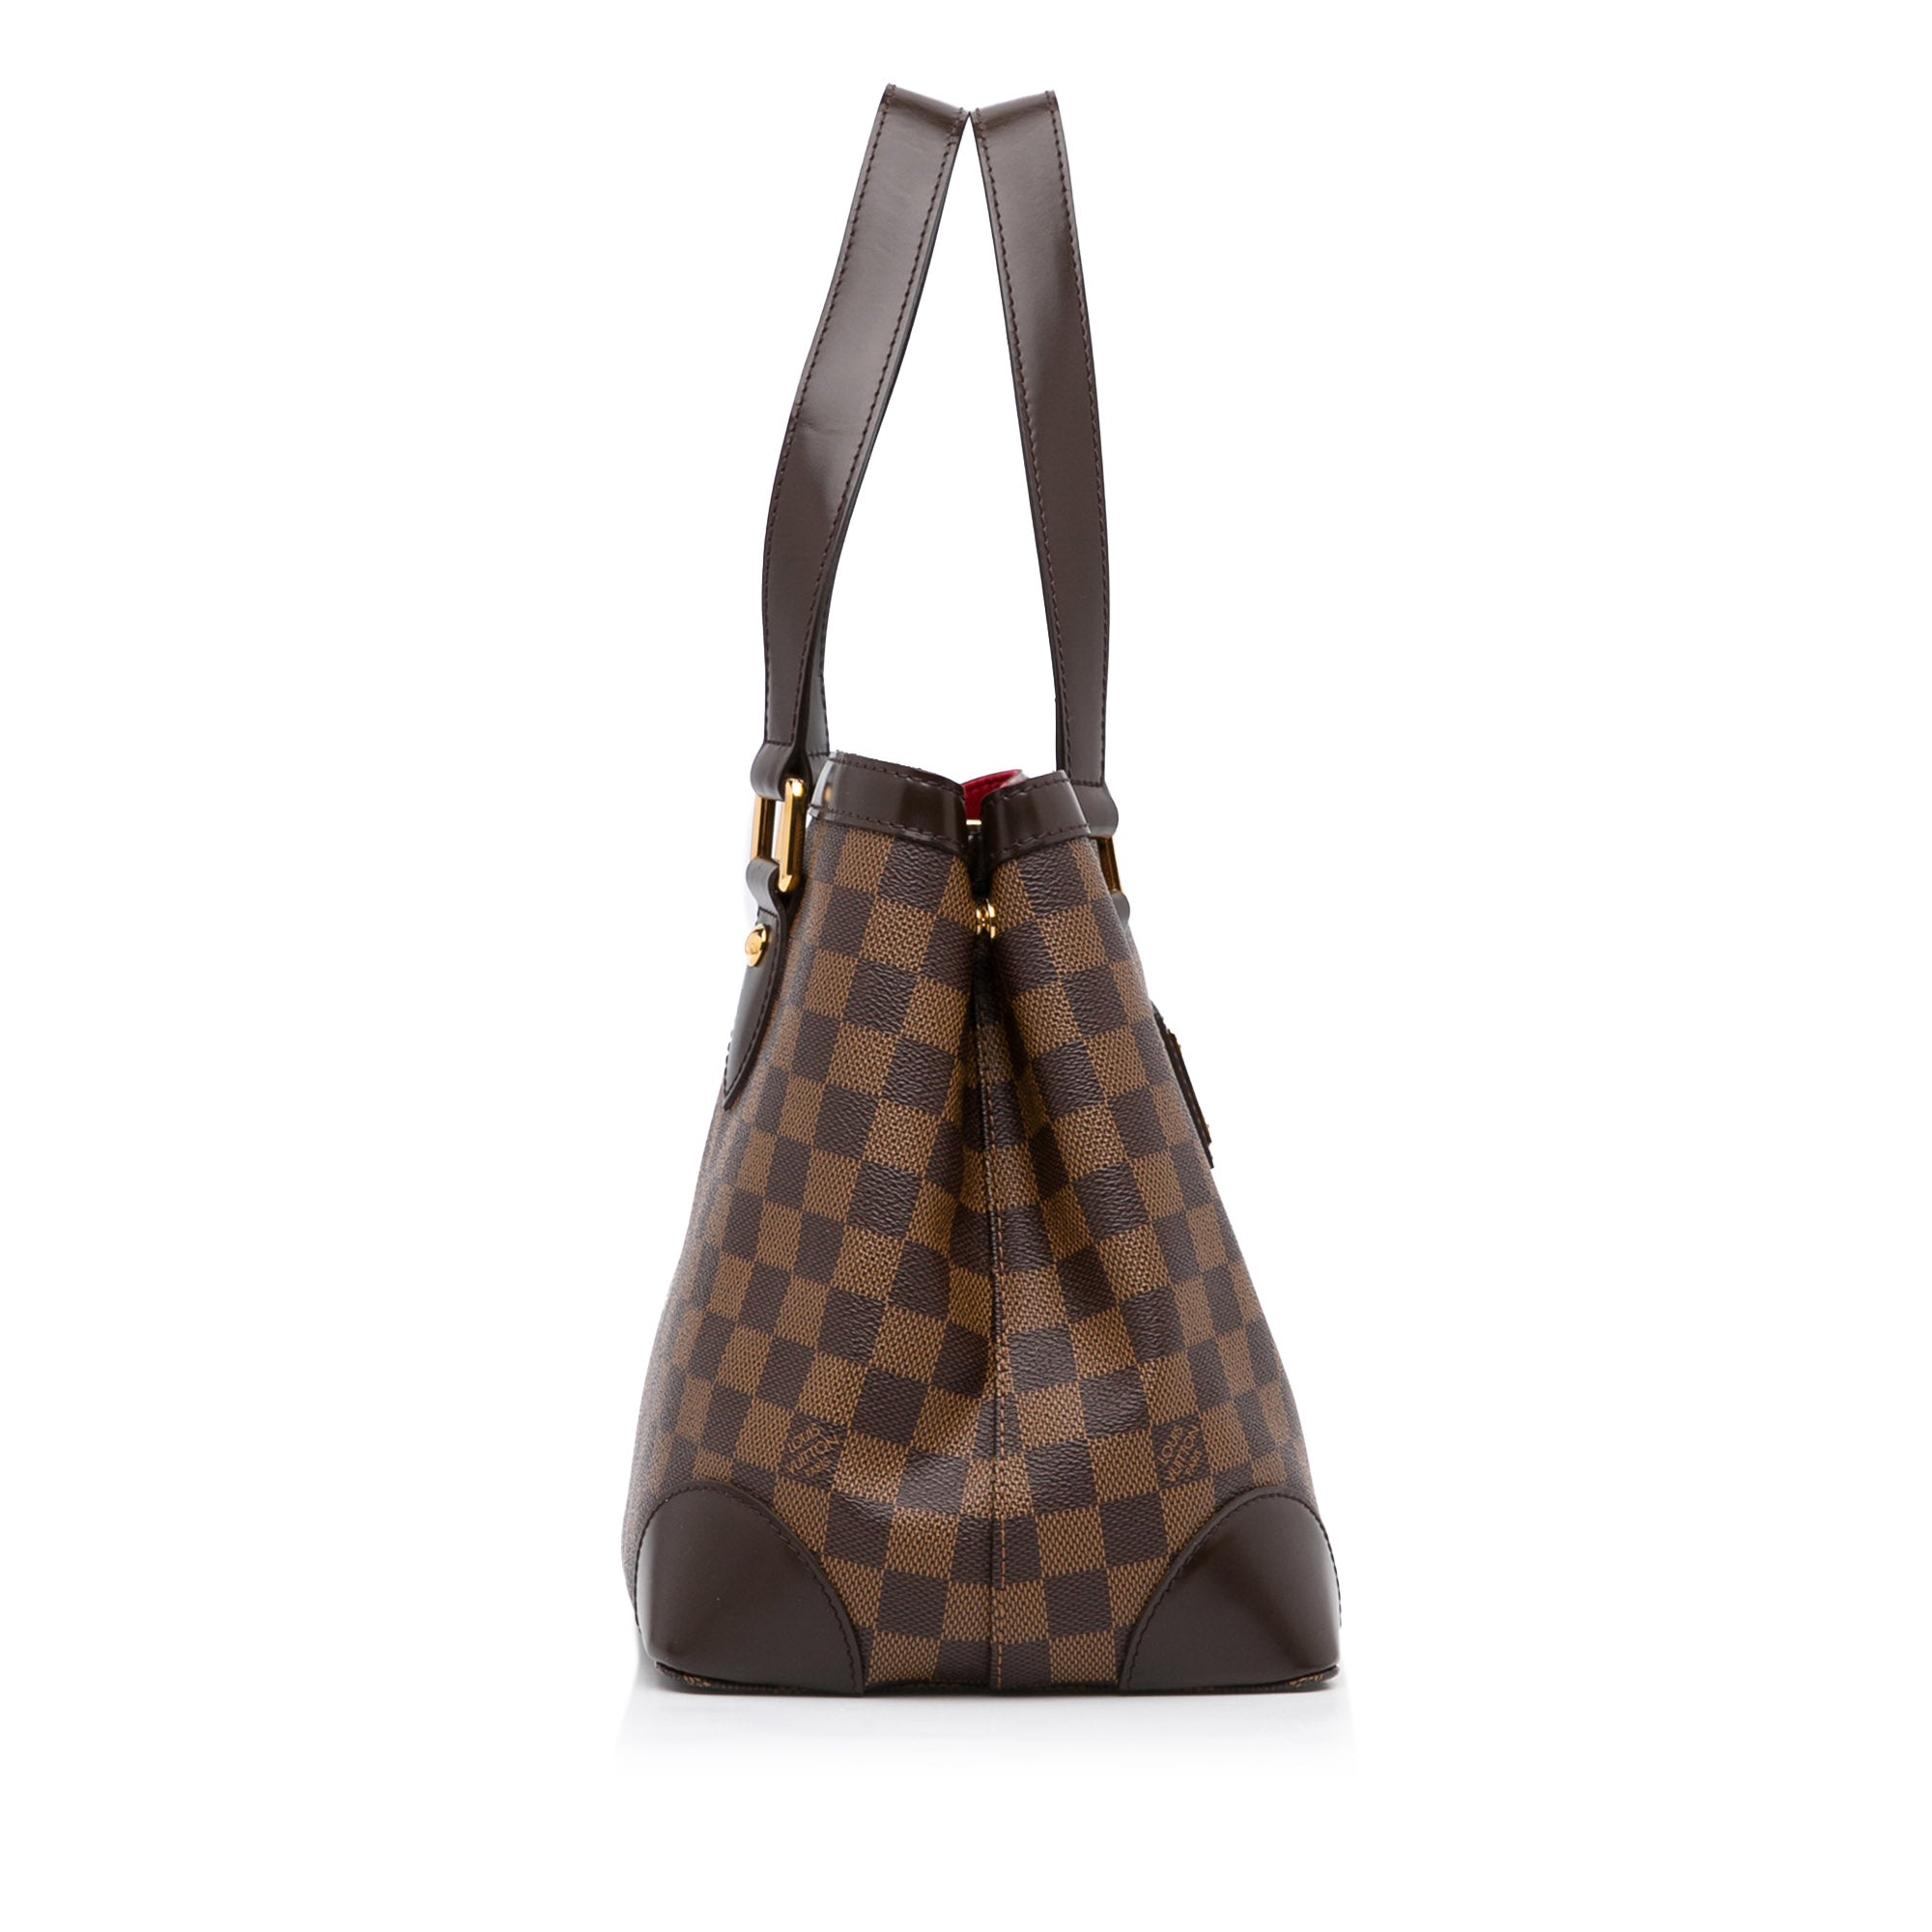 Authentic Louis Vuitton Damier Ebene Hampstead PM Handbag